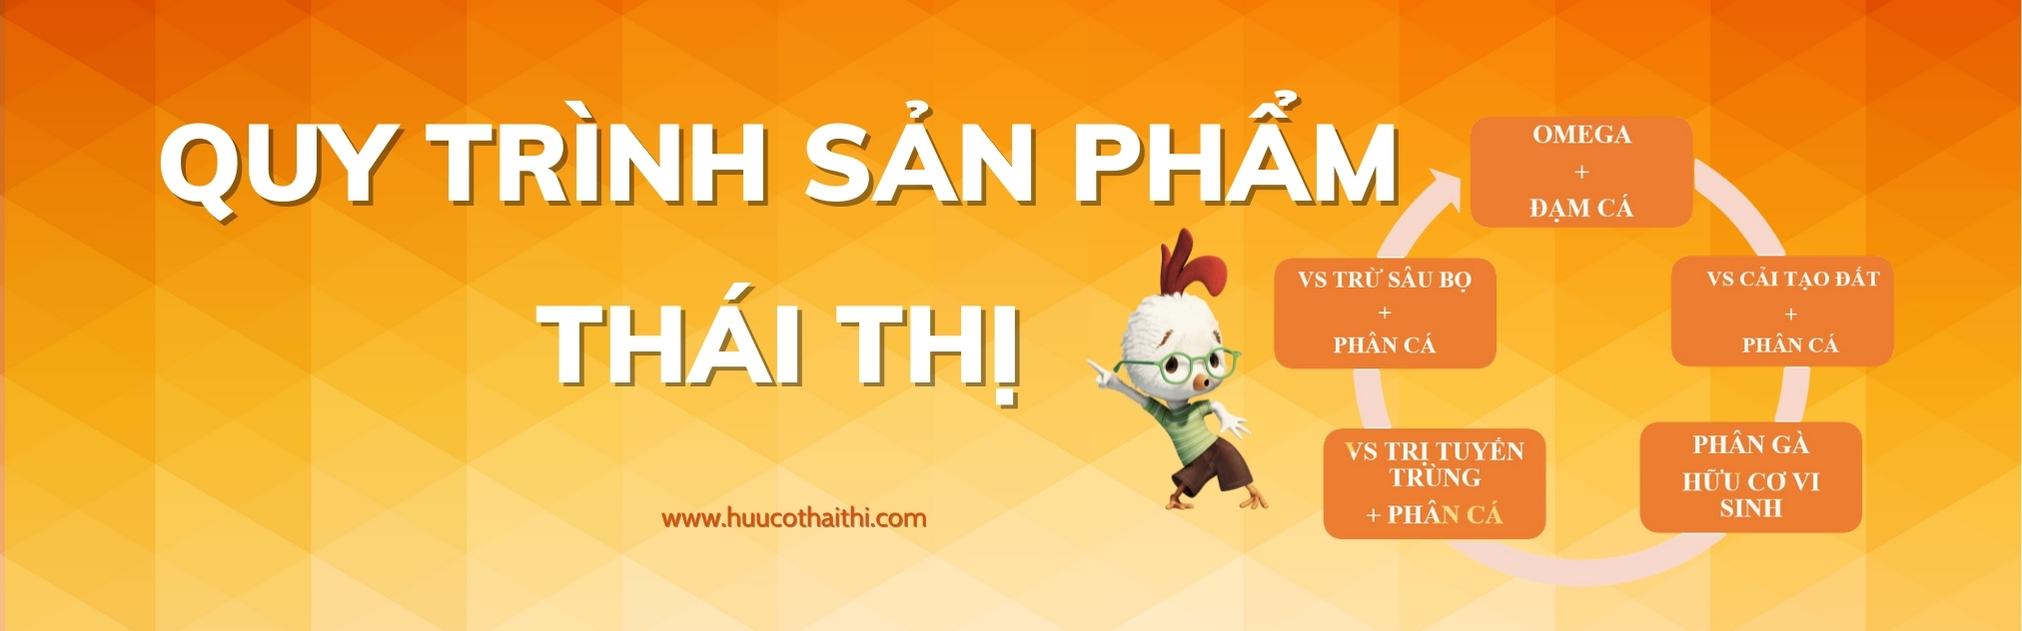 phan-bon-huu-co-thai-thi (1)